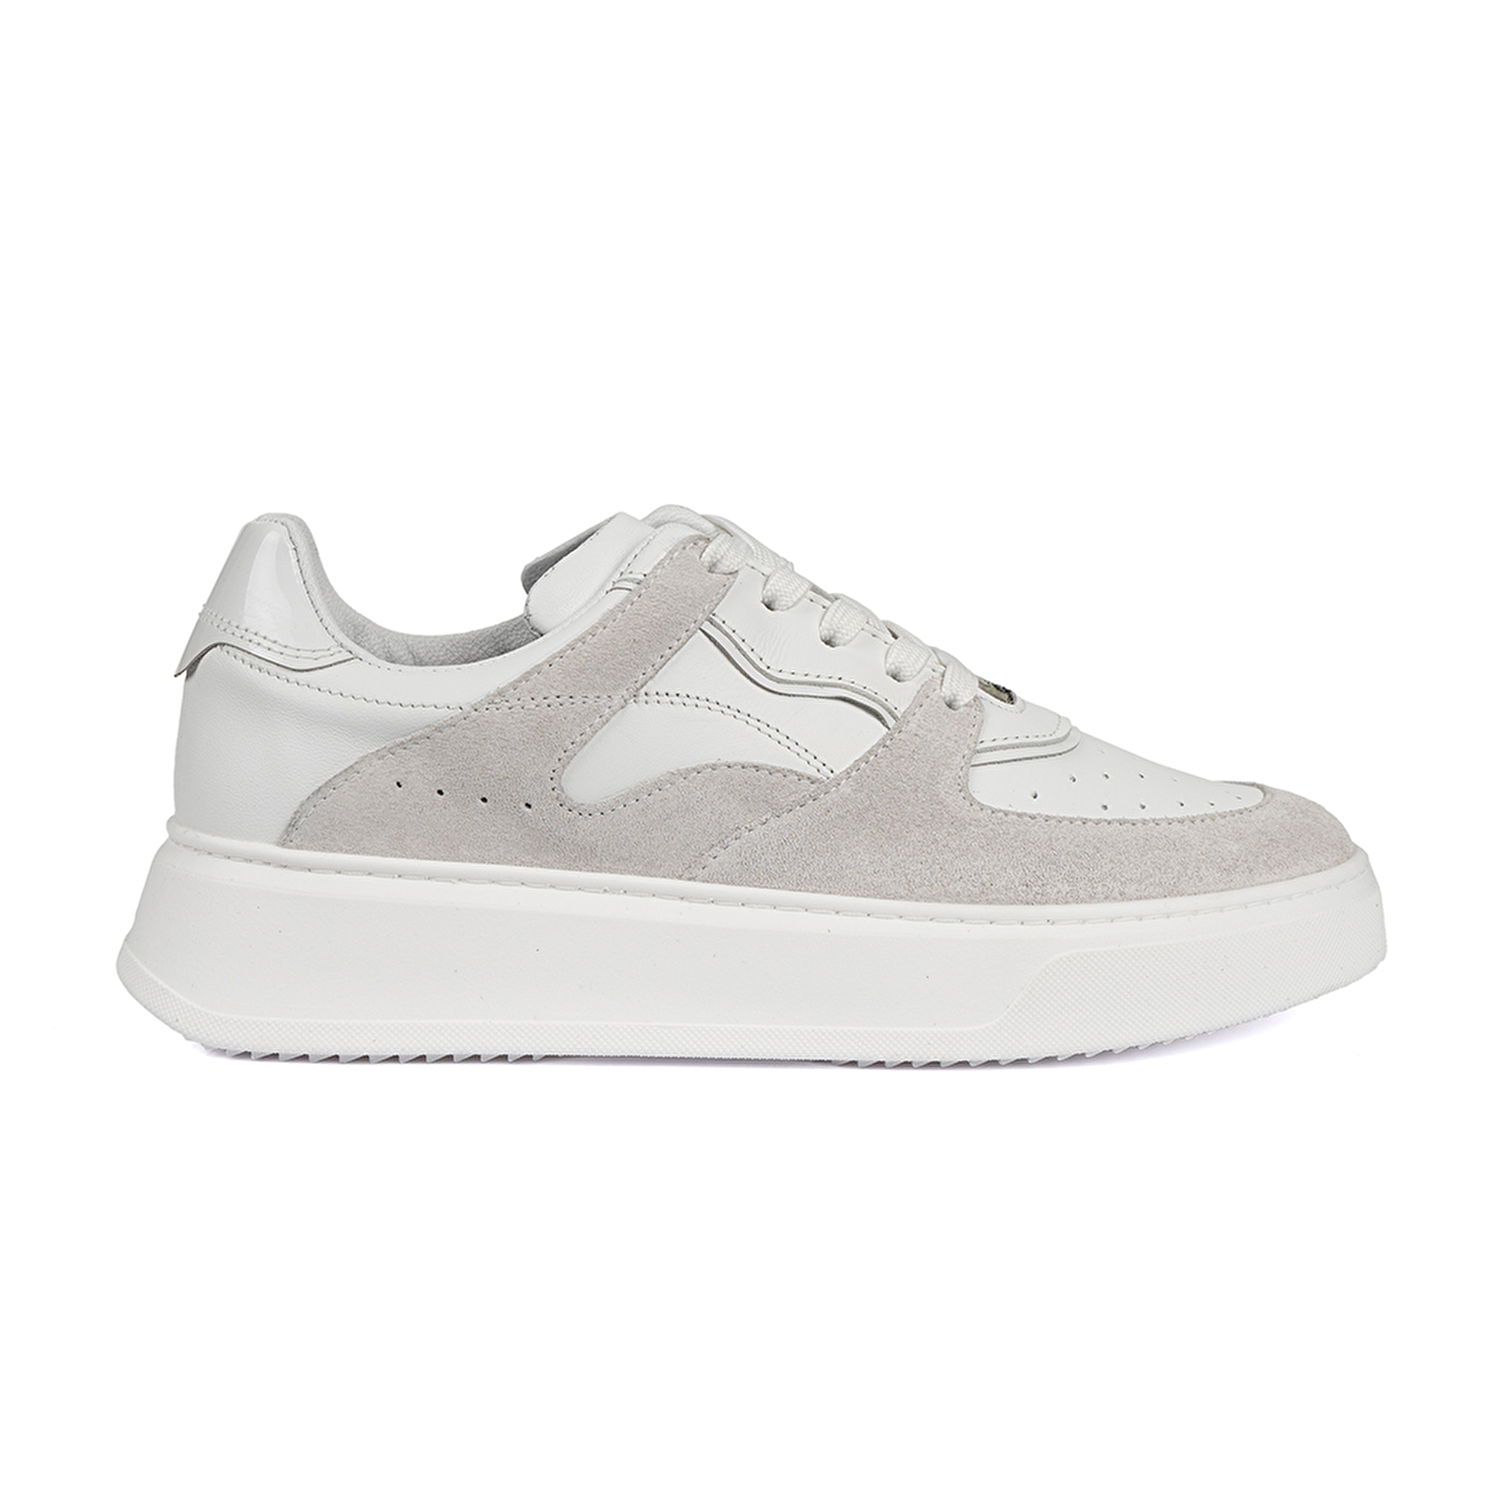 Kadın Beyaz Hakiki Deri Sneaker Ayakkabı 2Y2SA31351-1